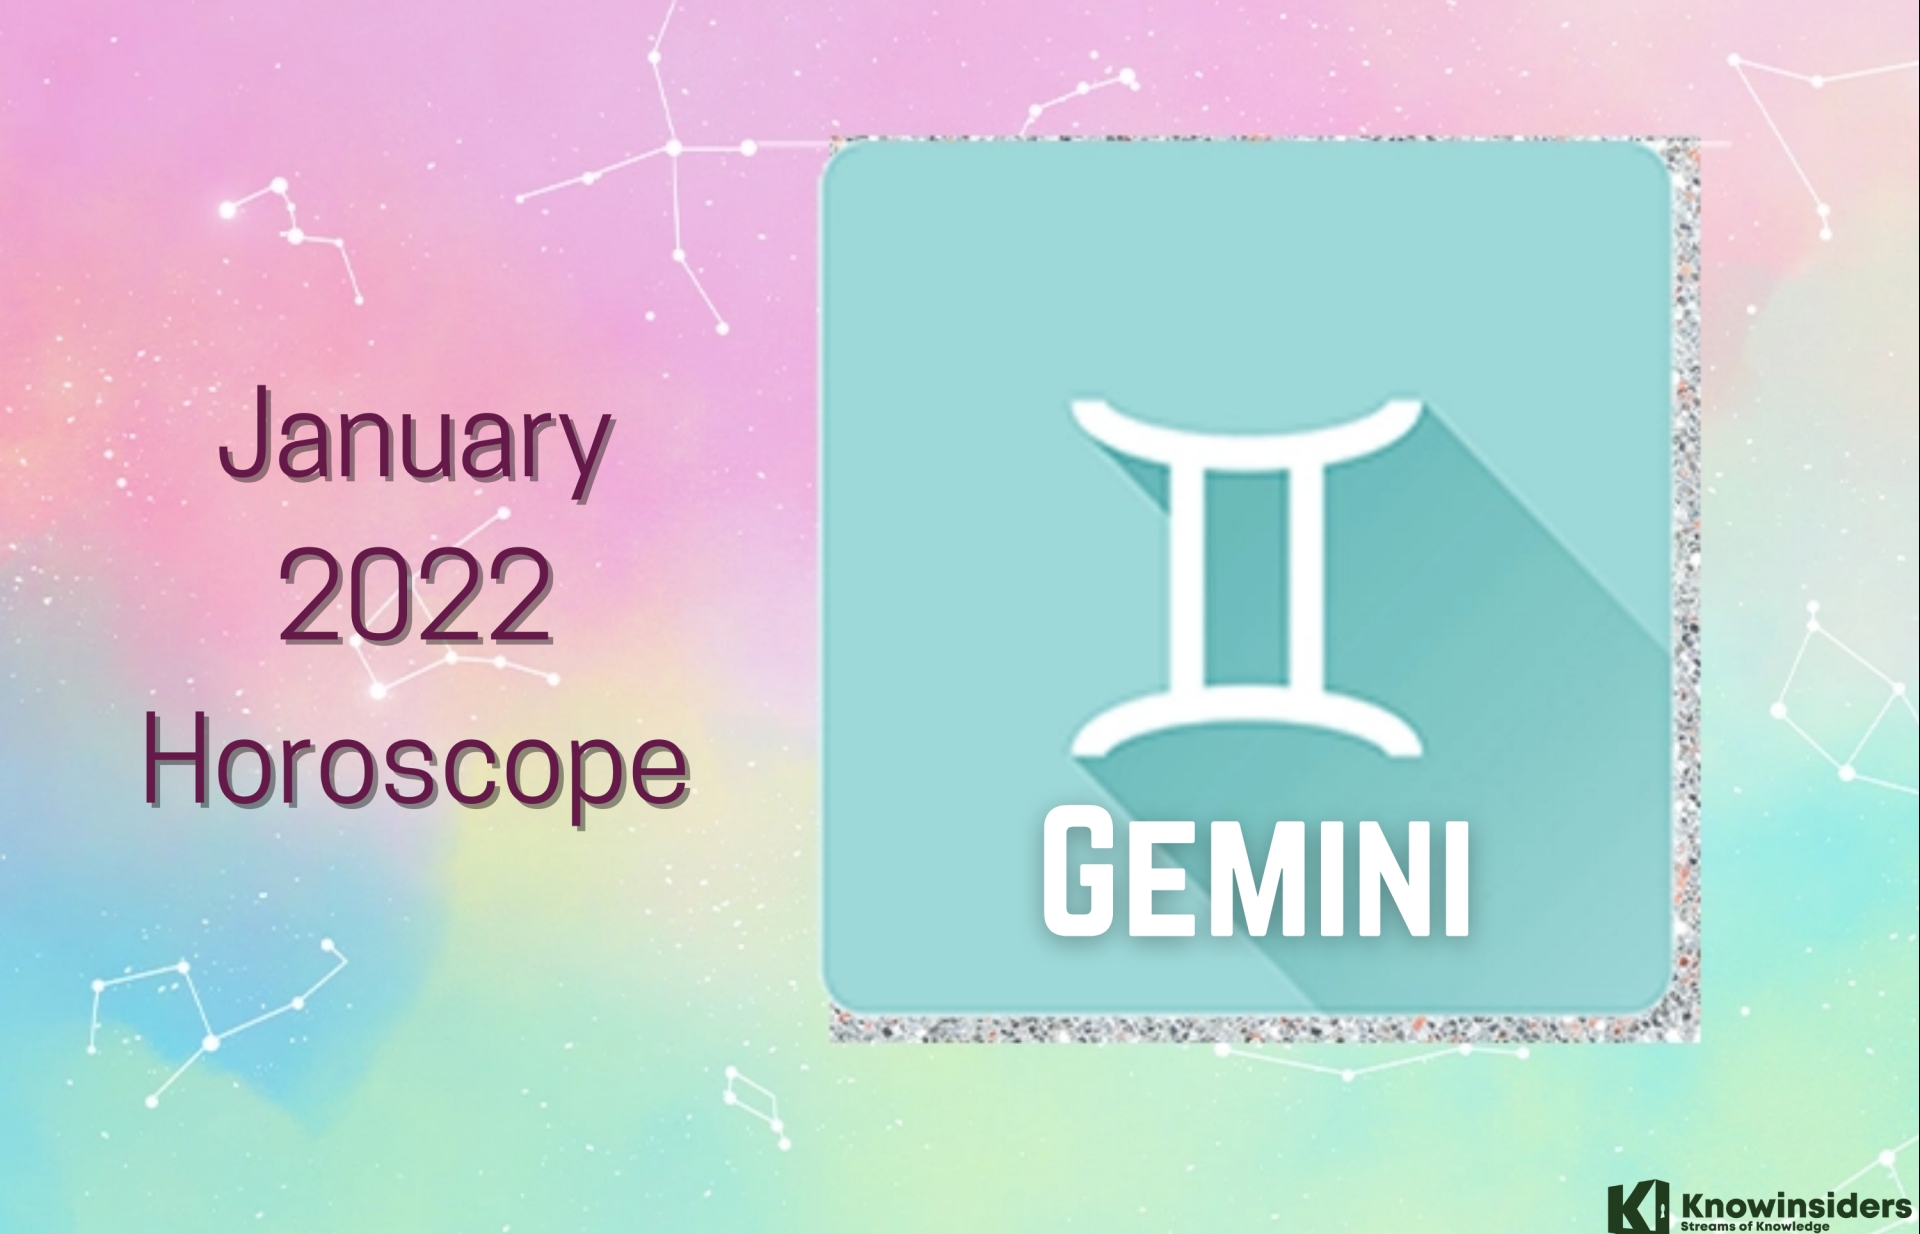 GEMINI January 2022 Horoscope: Prediction for Love, Career, Money